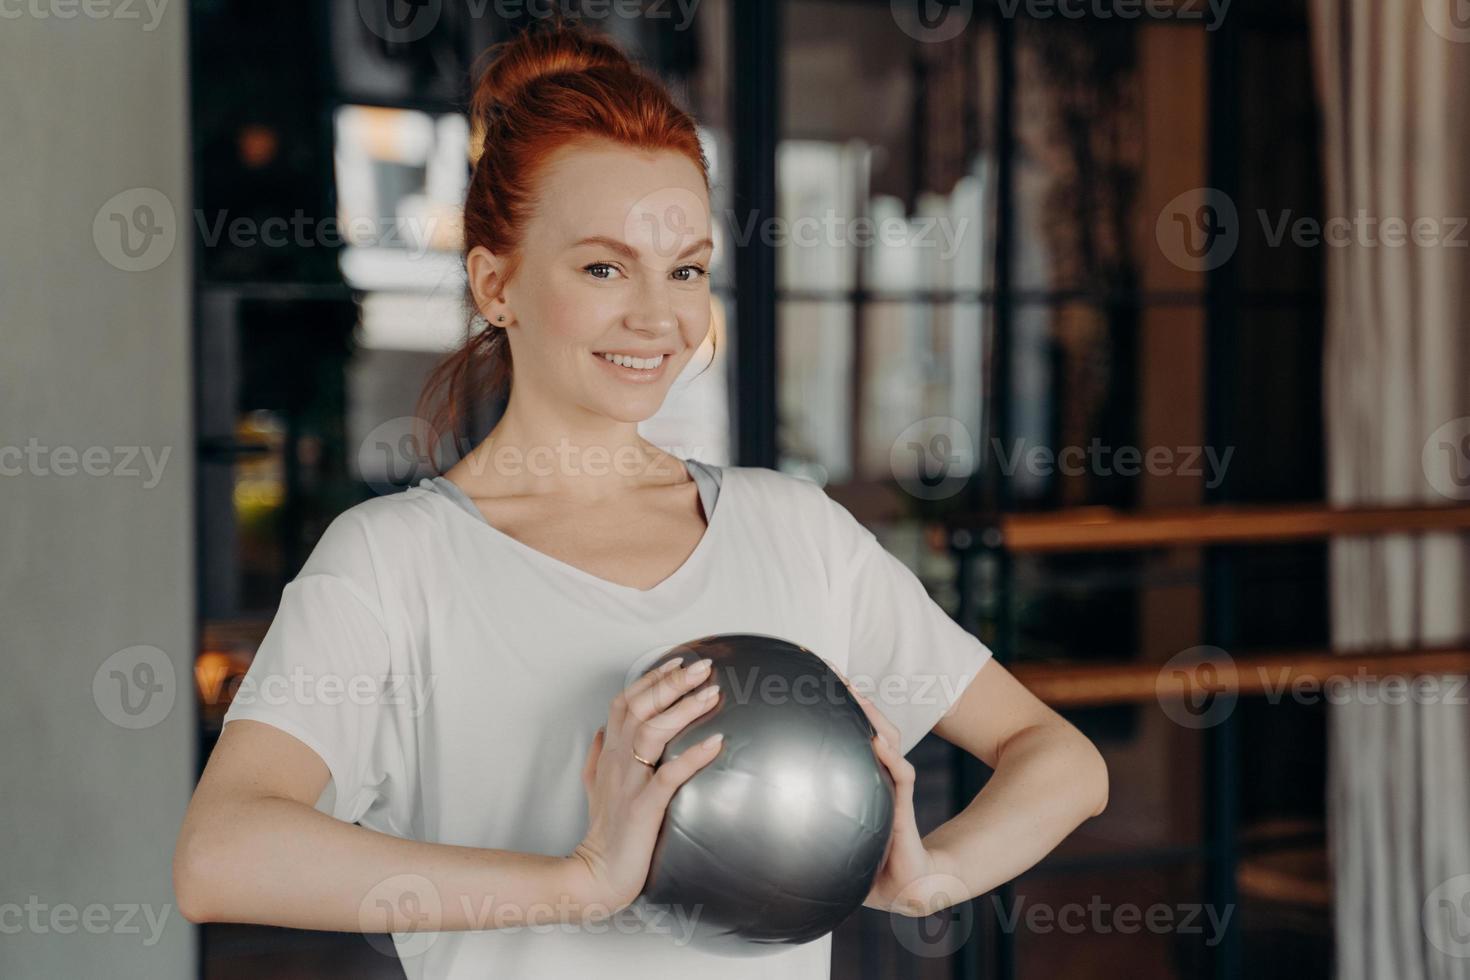 bella donna zenzero in abiti sportivi che sorride alla macchina fotografica mentre tiene in mano fitball argento di piccole dimensioni foto